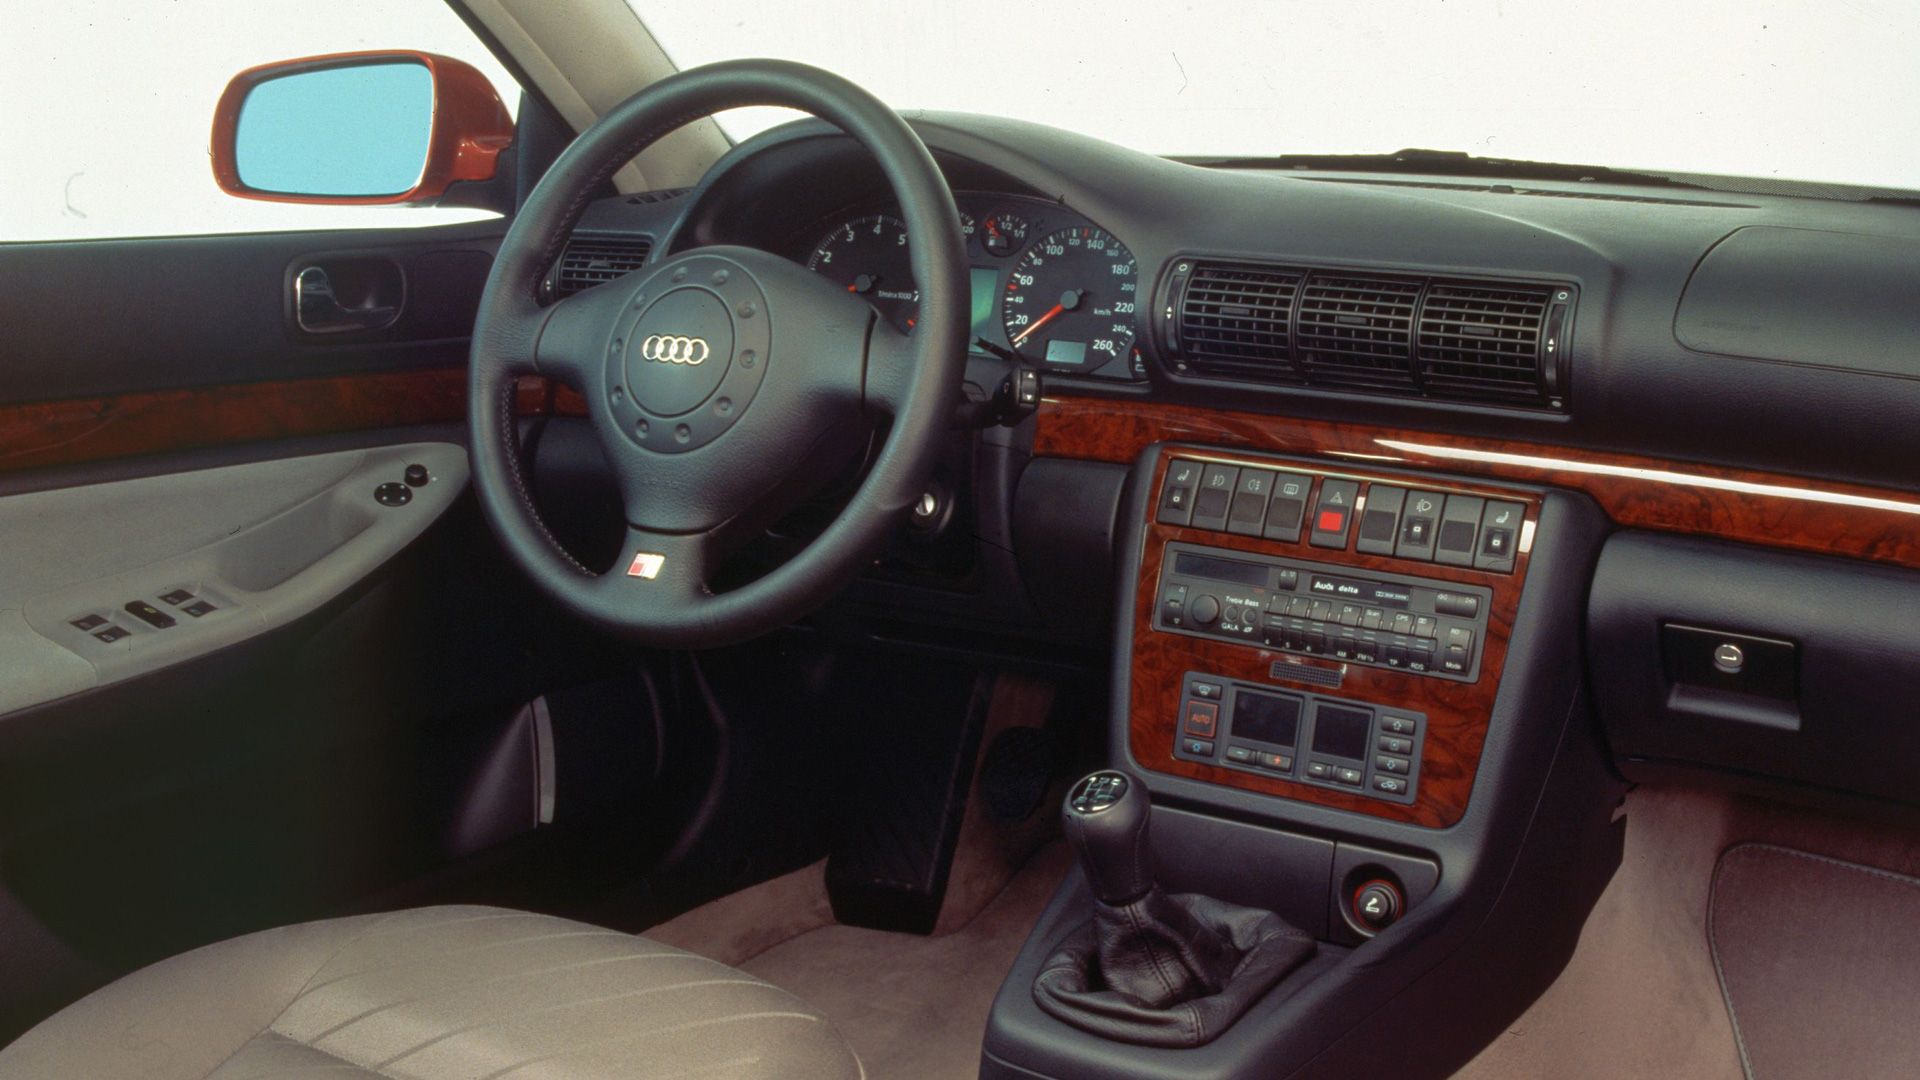 Audi A4 - Cockpit 1995